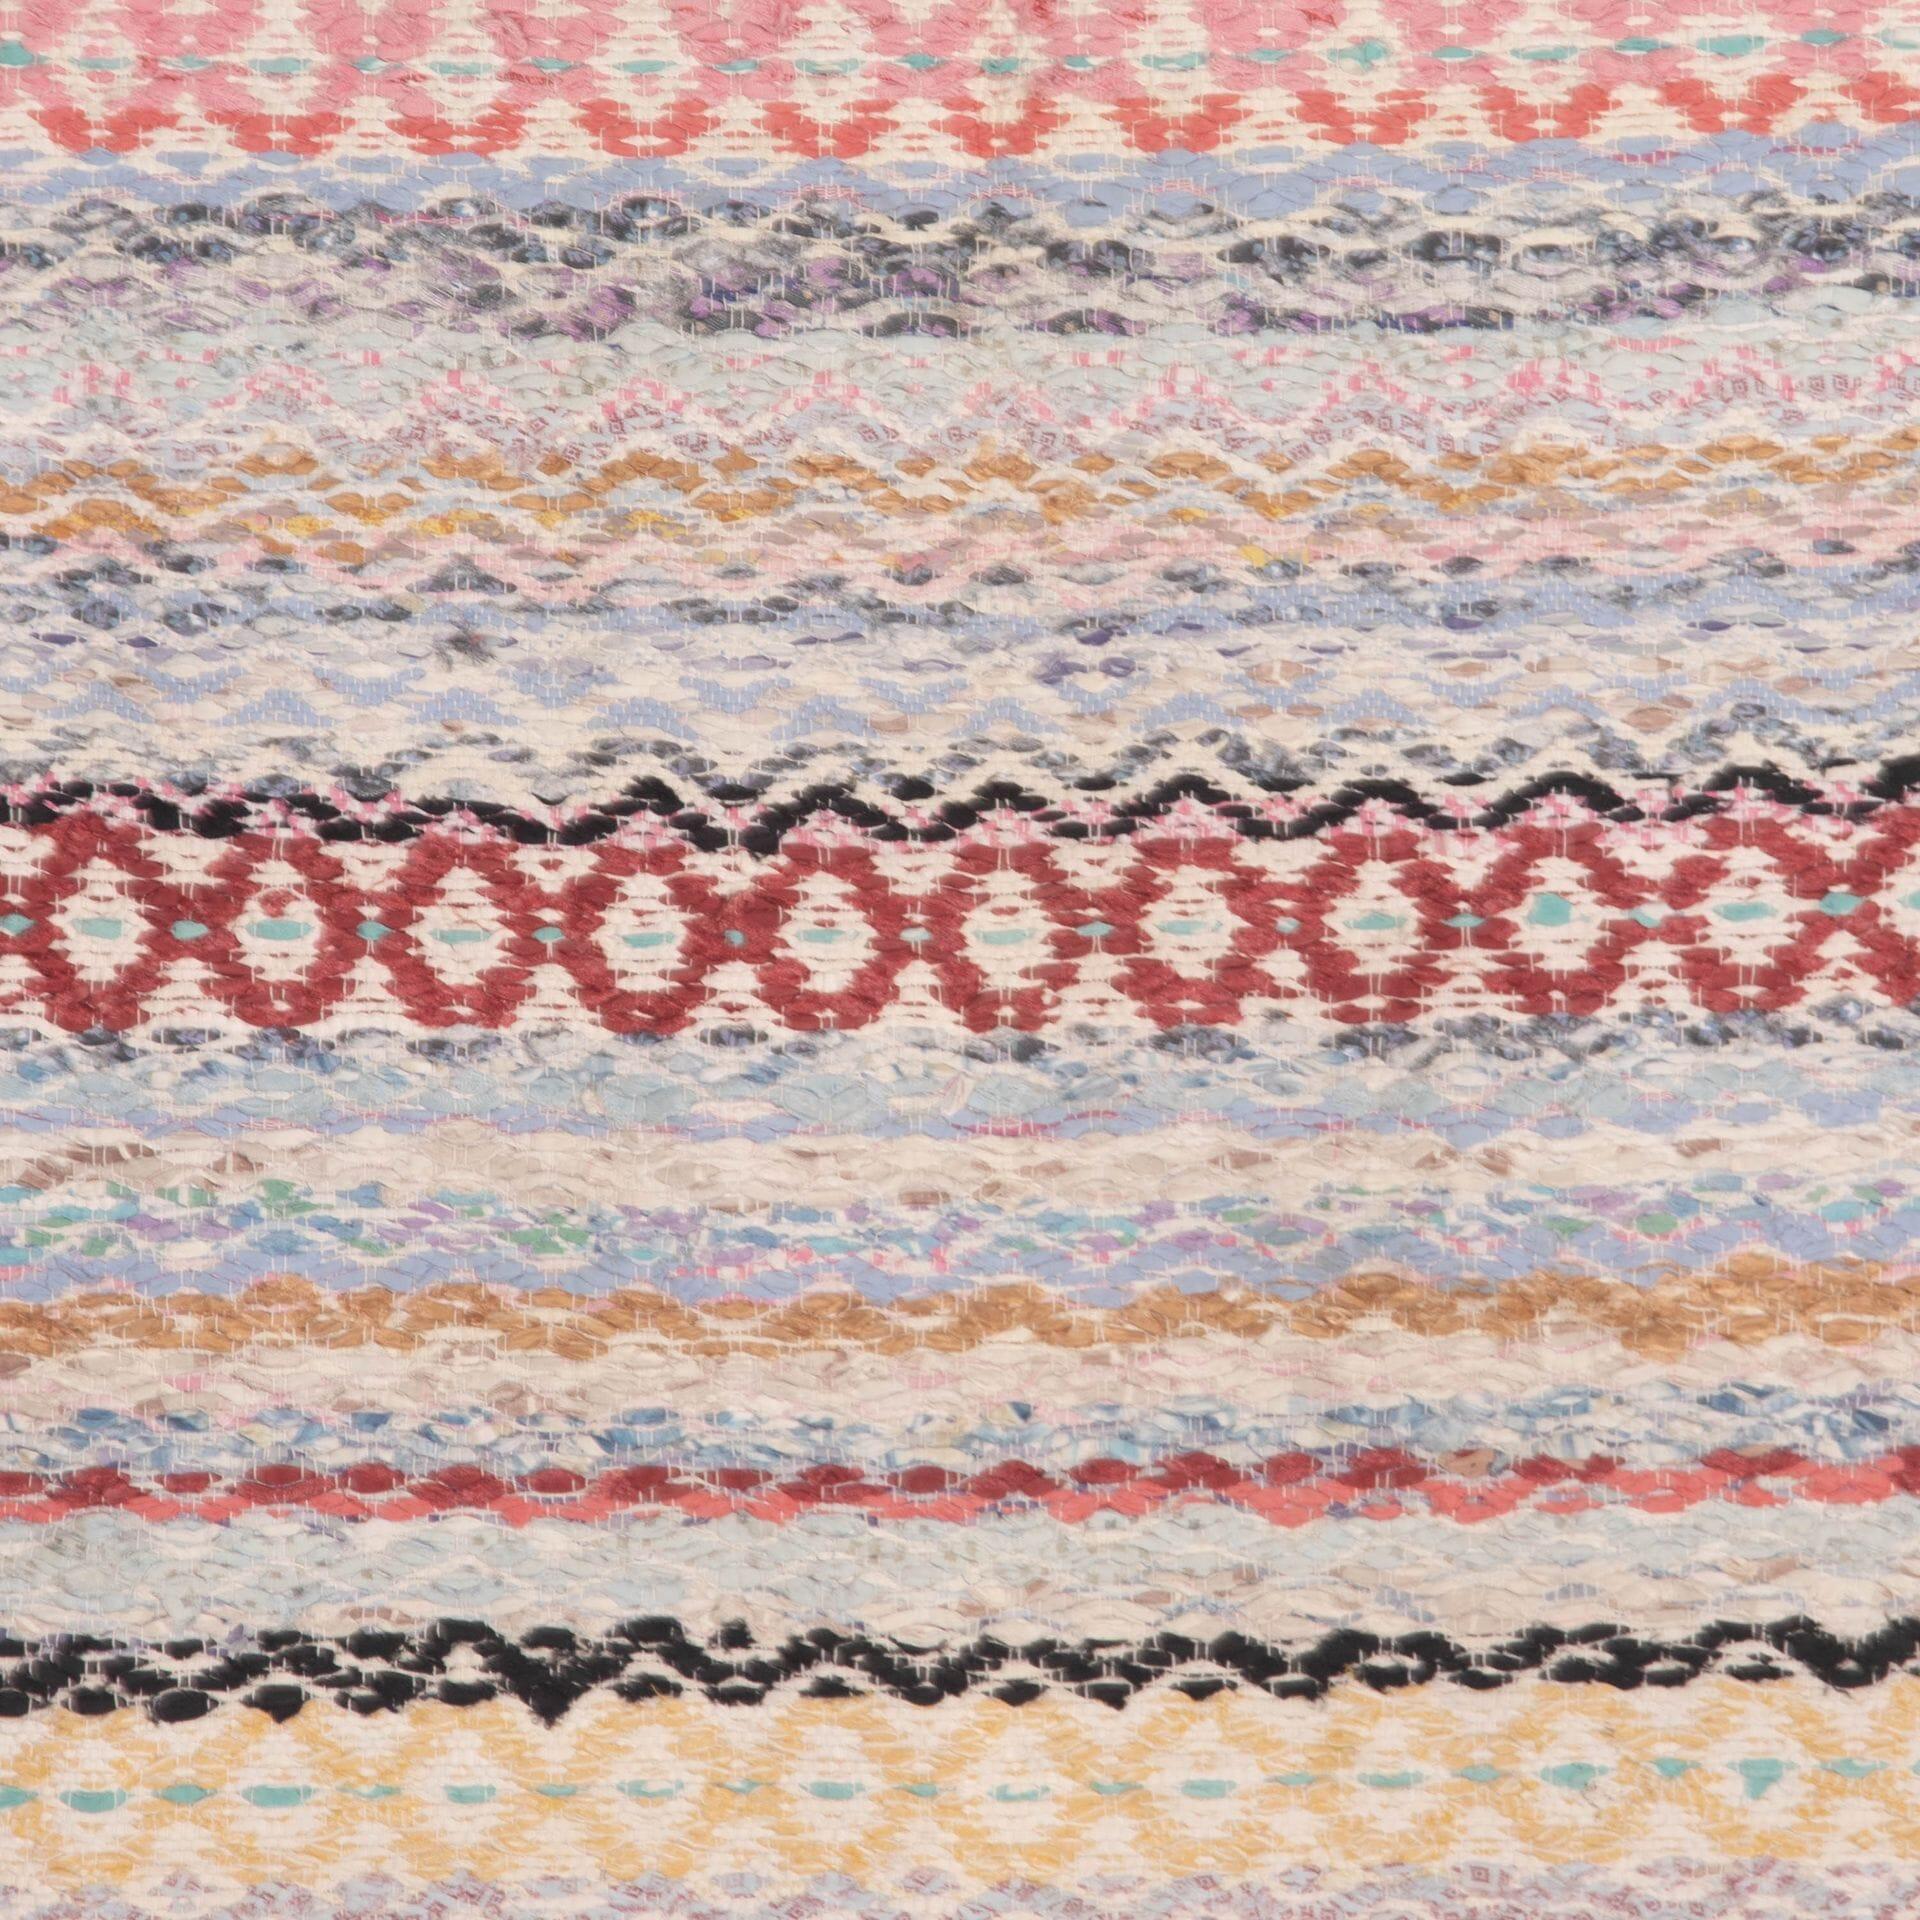 Traditioneller schwedischer Teppich des 20. Jahrhunderts, blau, rosa, senffarben, rot, schwarz. 